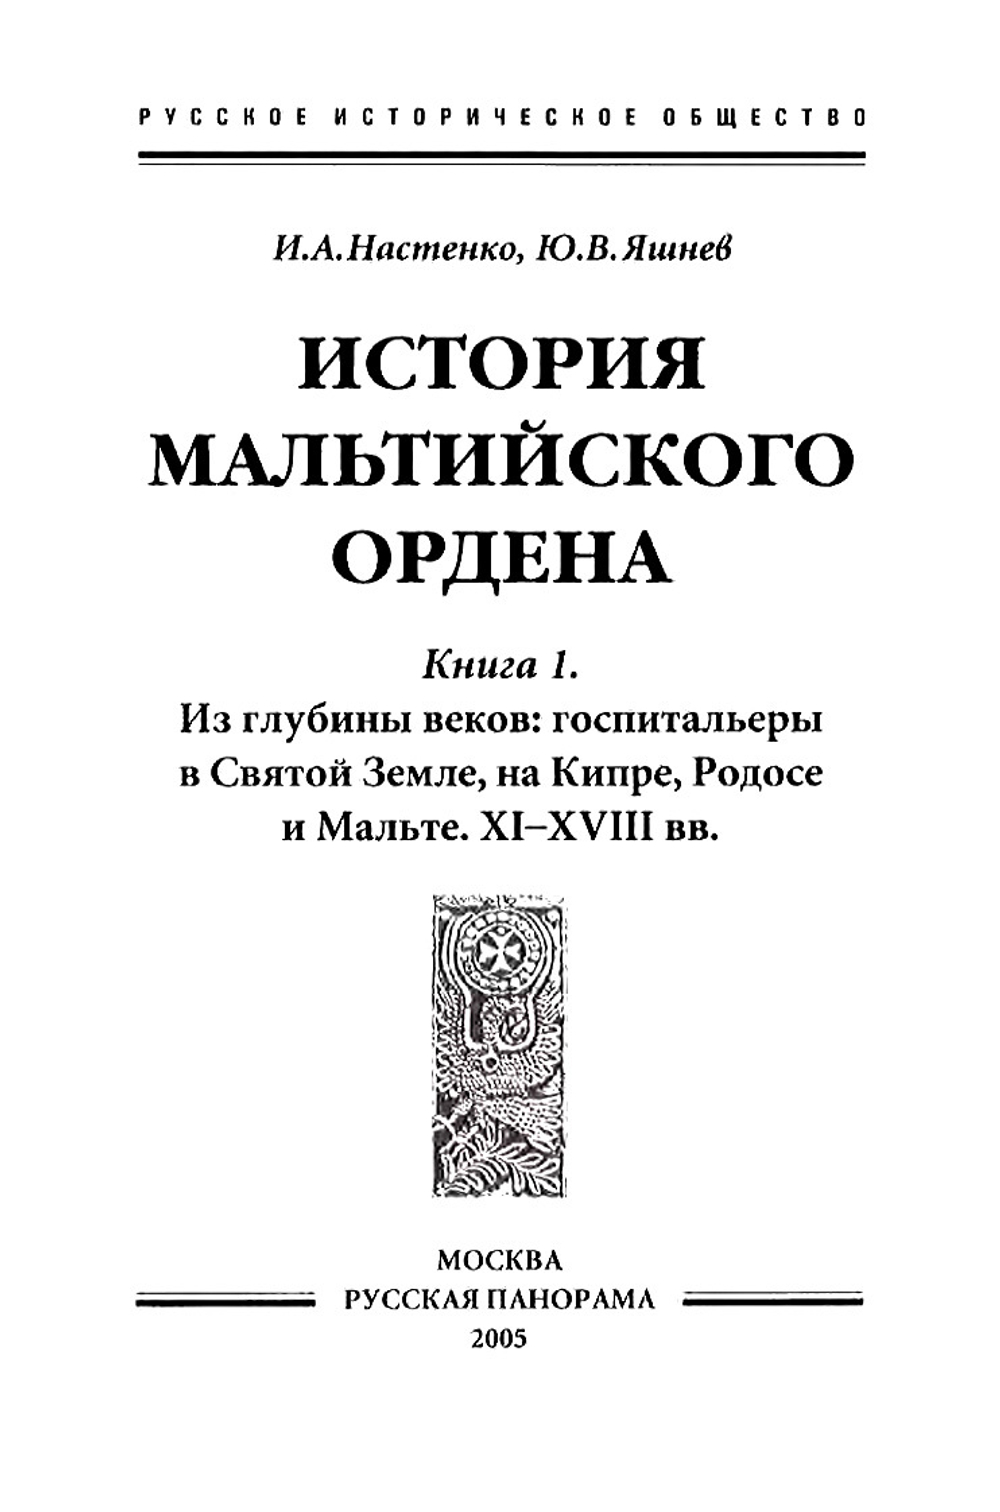 Настенко И.А., Яшнев Ю.В. История Мальтийского ордена. В 2-x книгах